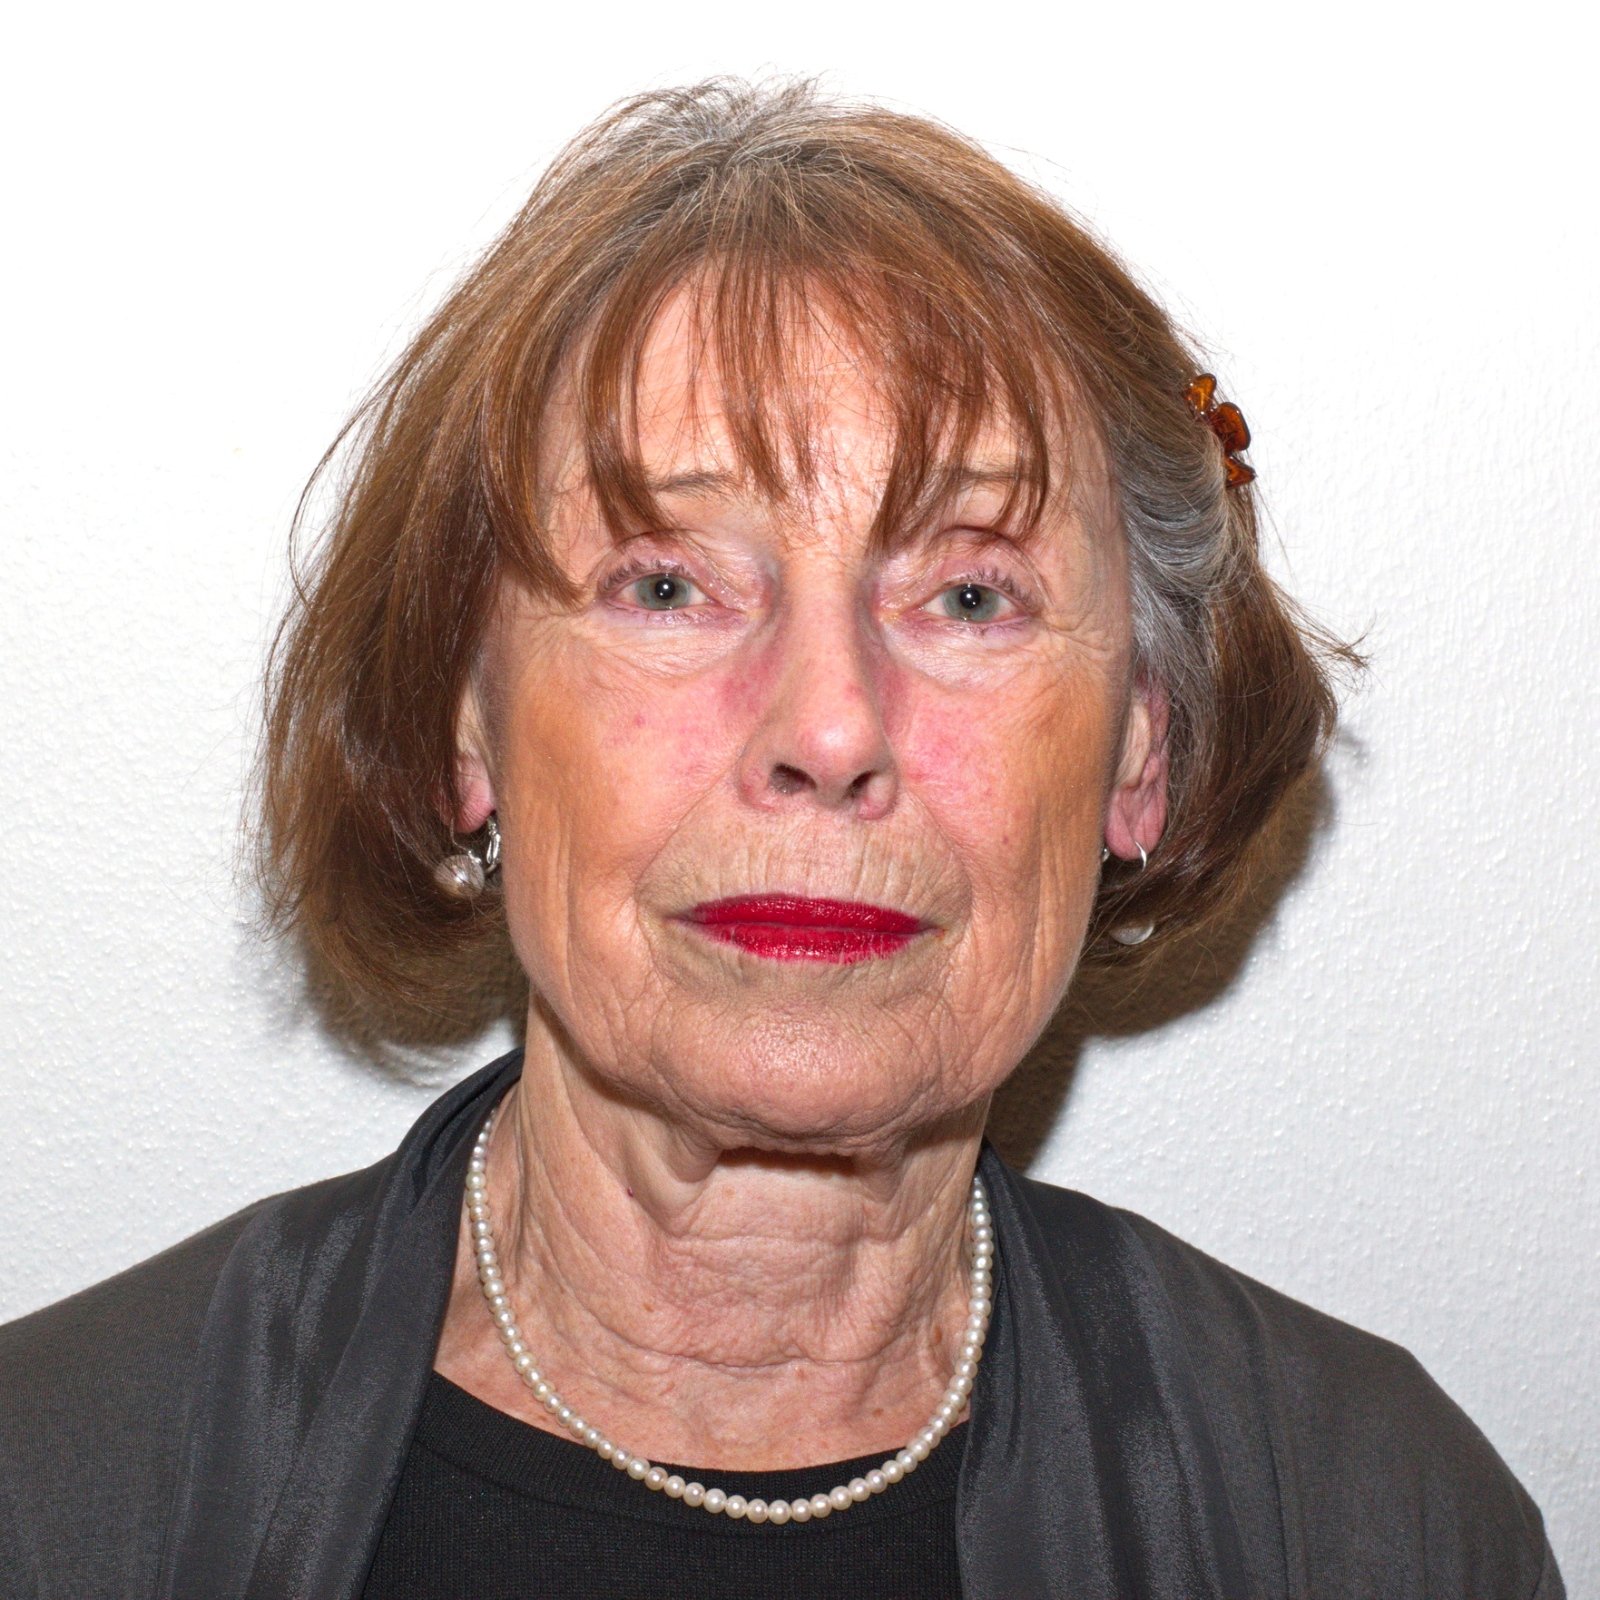 Brigitte Scheer (c) G. Monschau